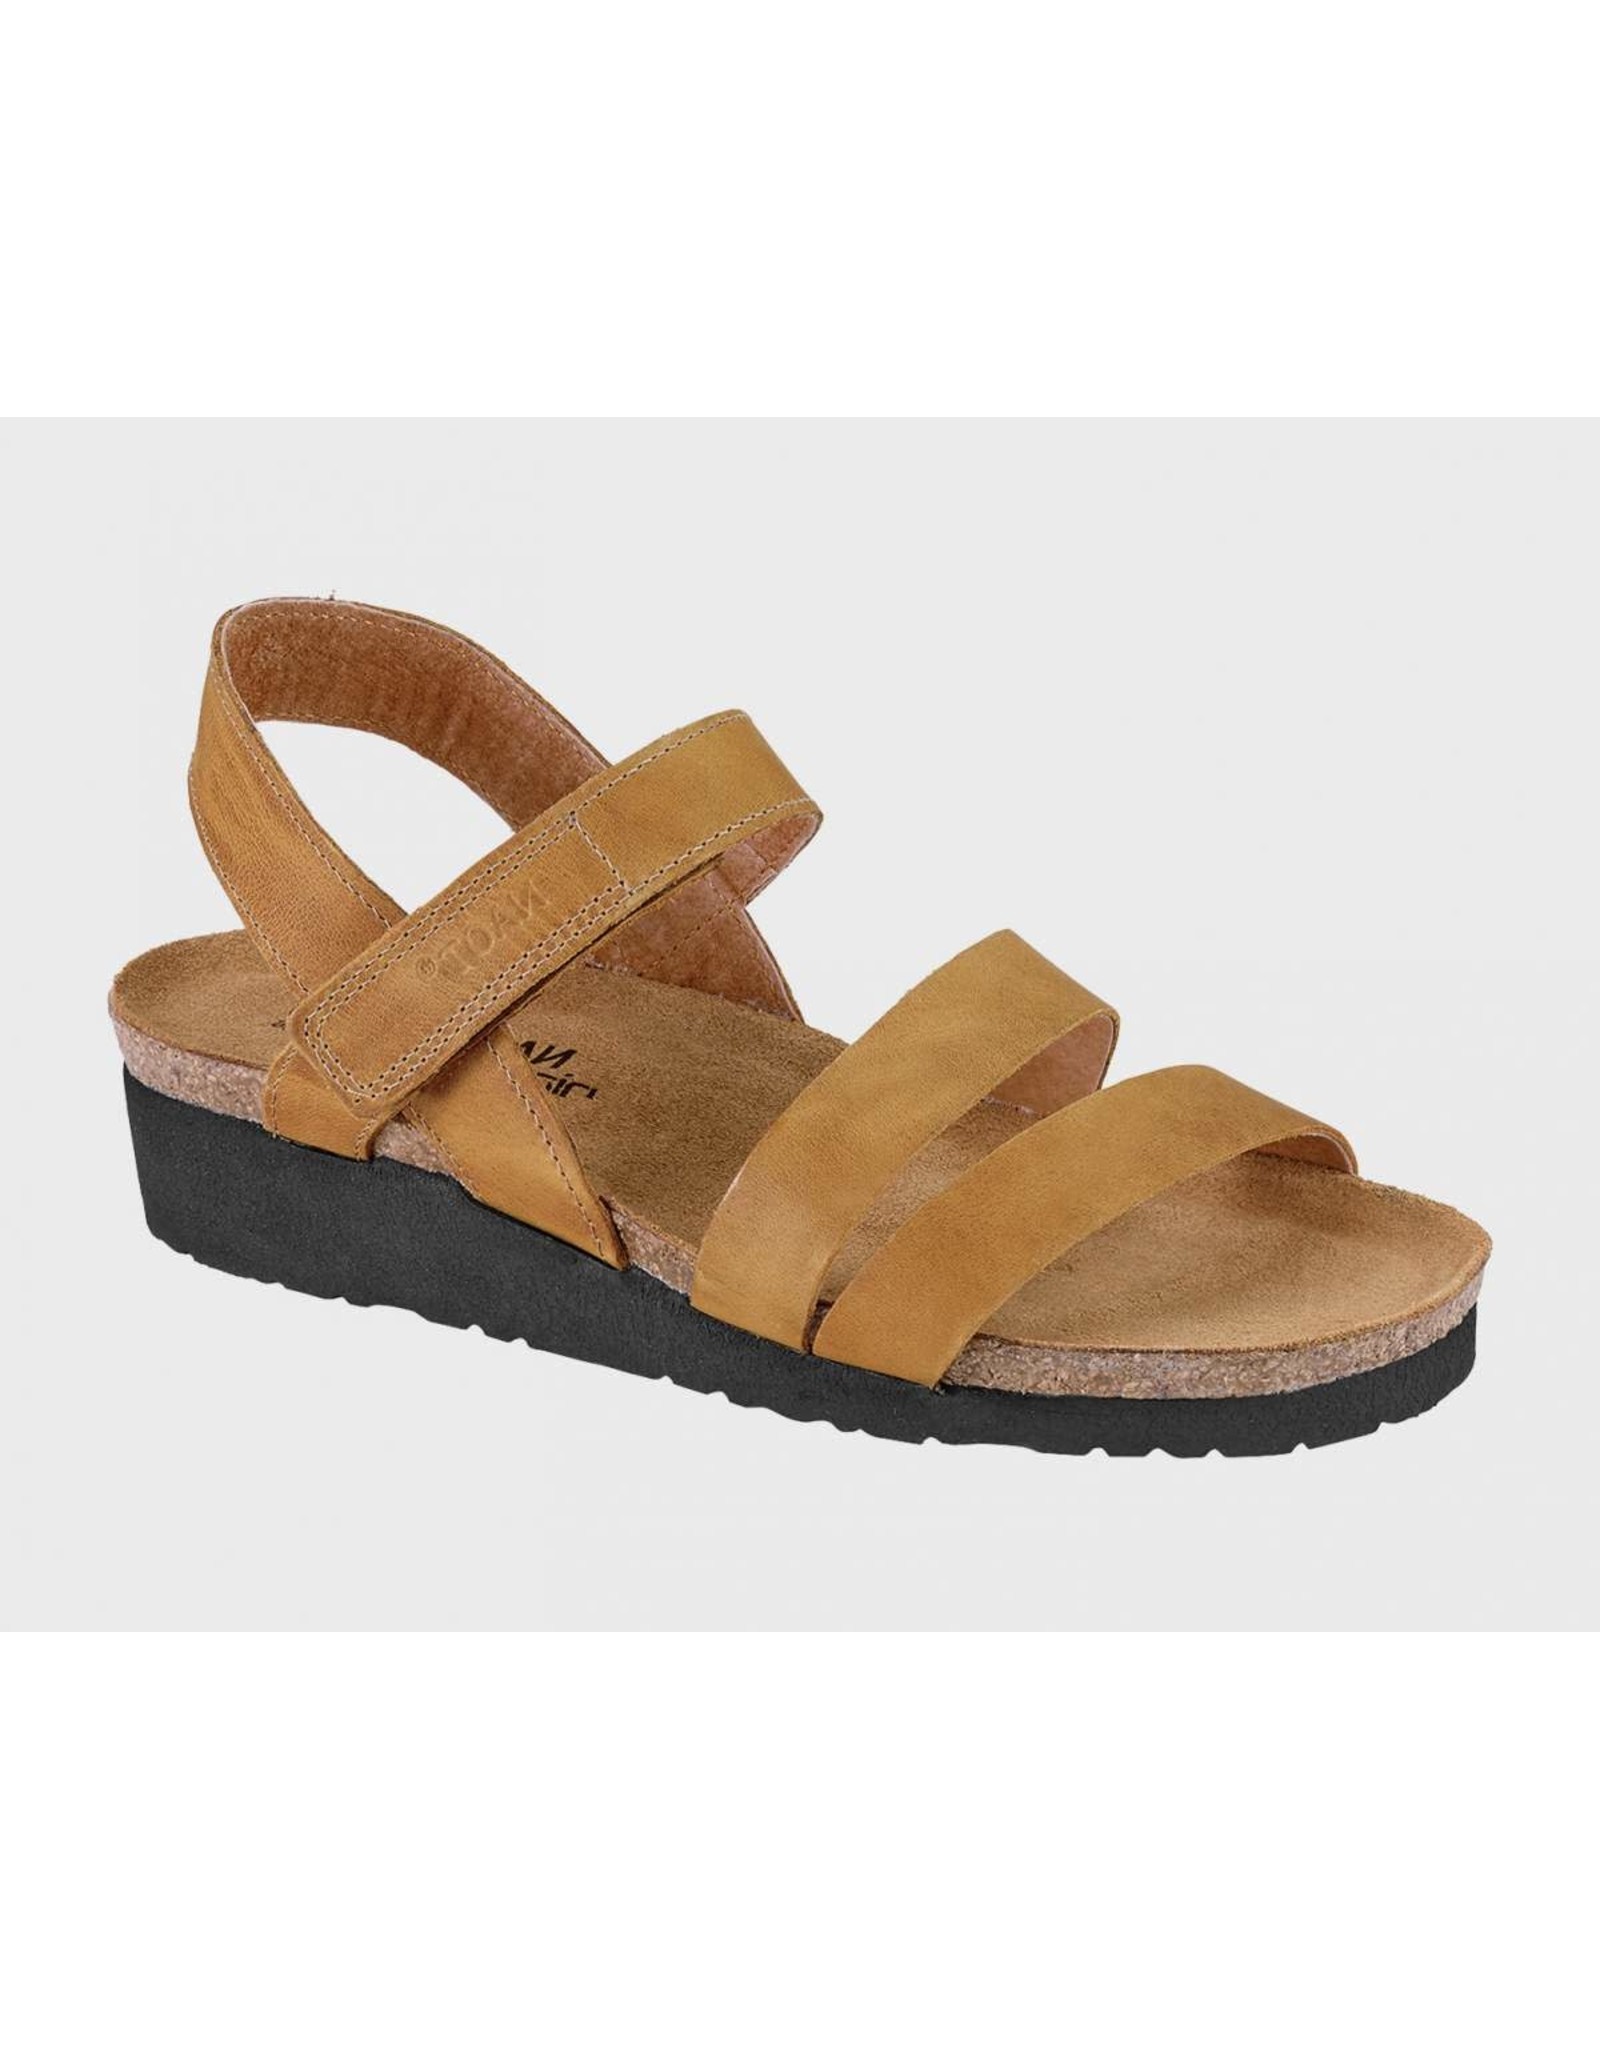 Naot Kayla Leather Sandal